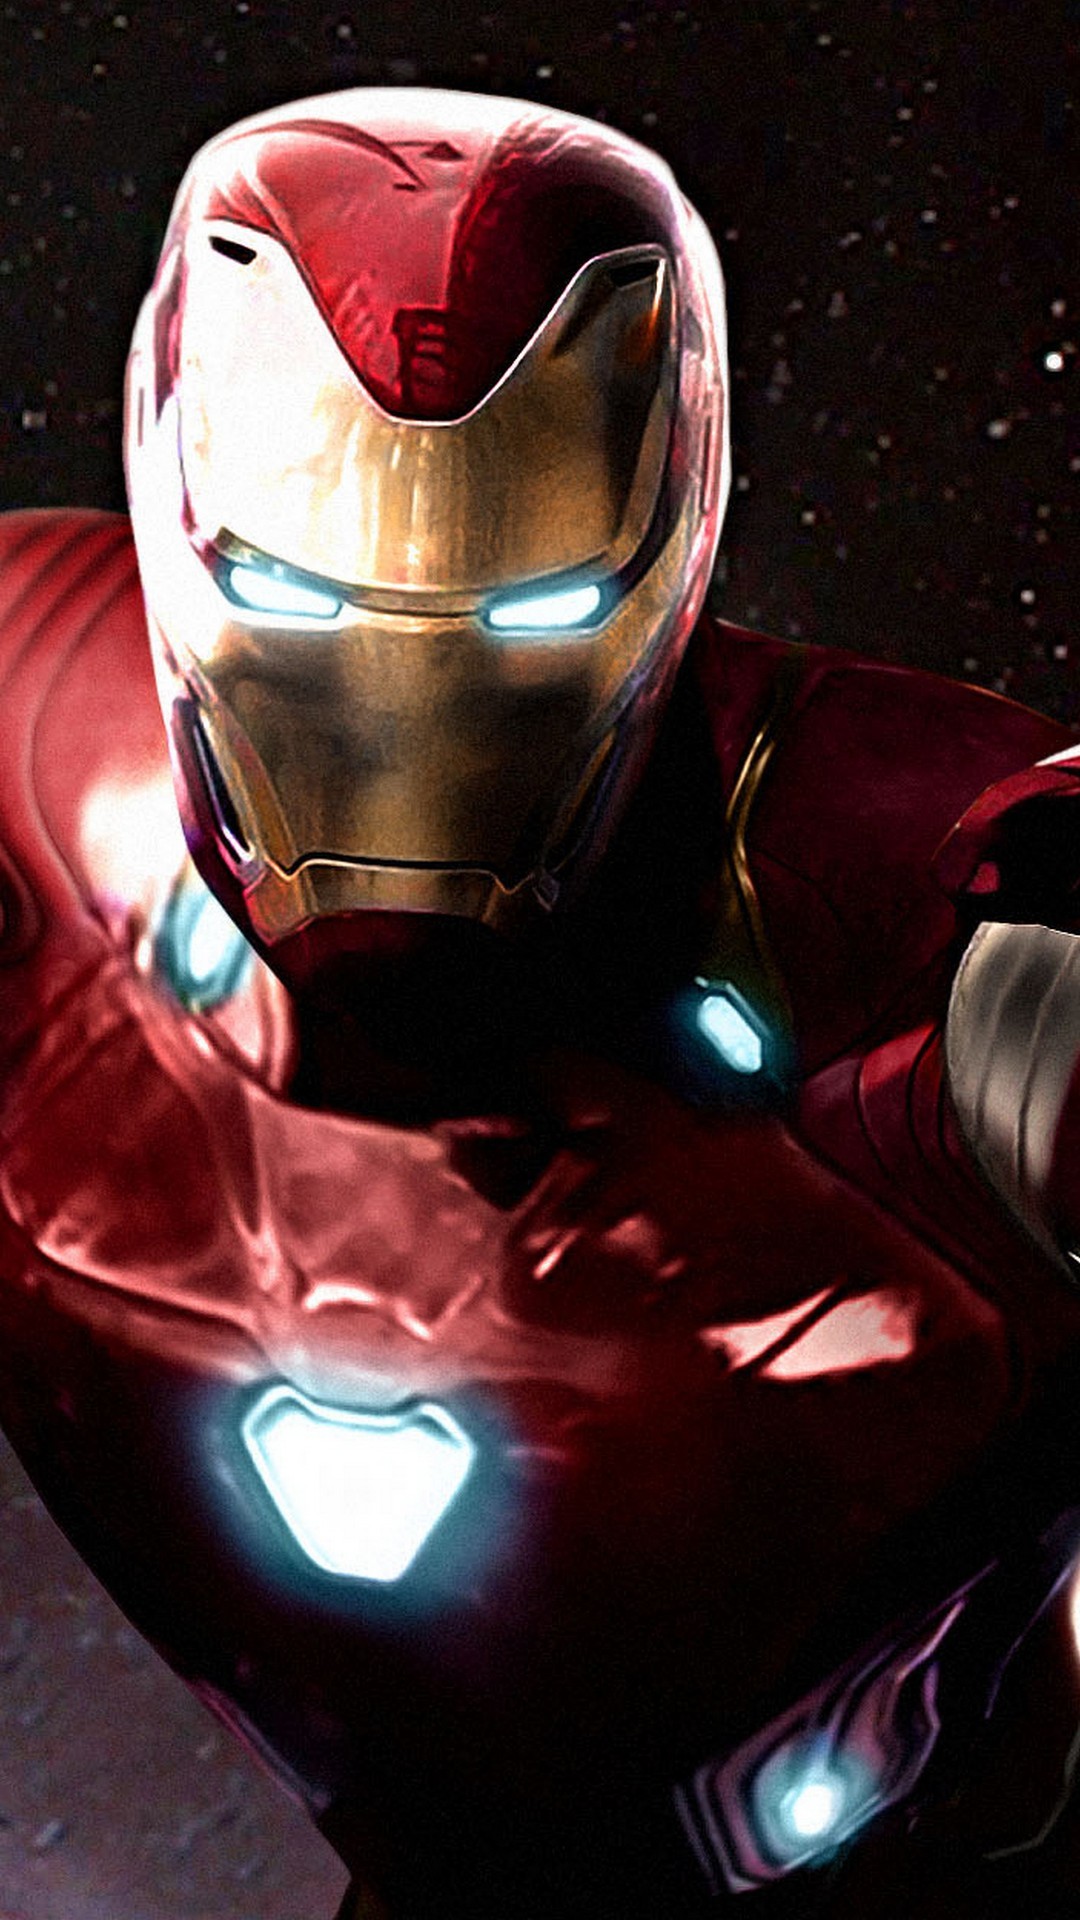 Iron Man Avengers Infinity War iPhone Wallpaper resolution 1080x1920